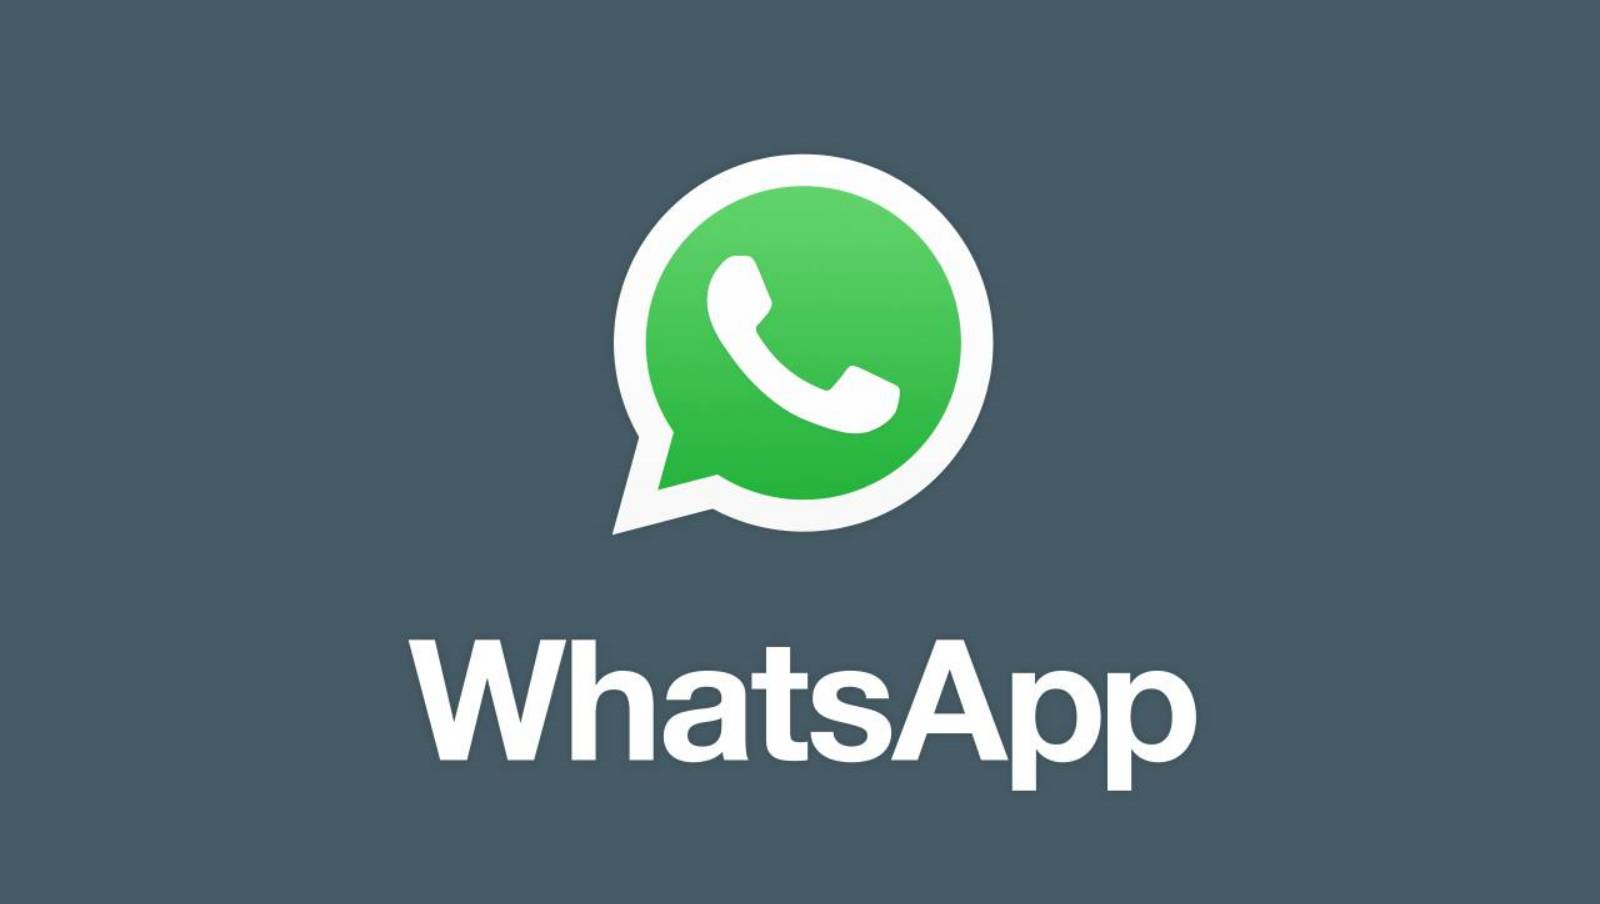 WhatsApp geheime functies